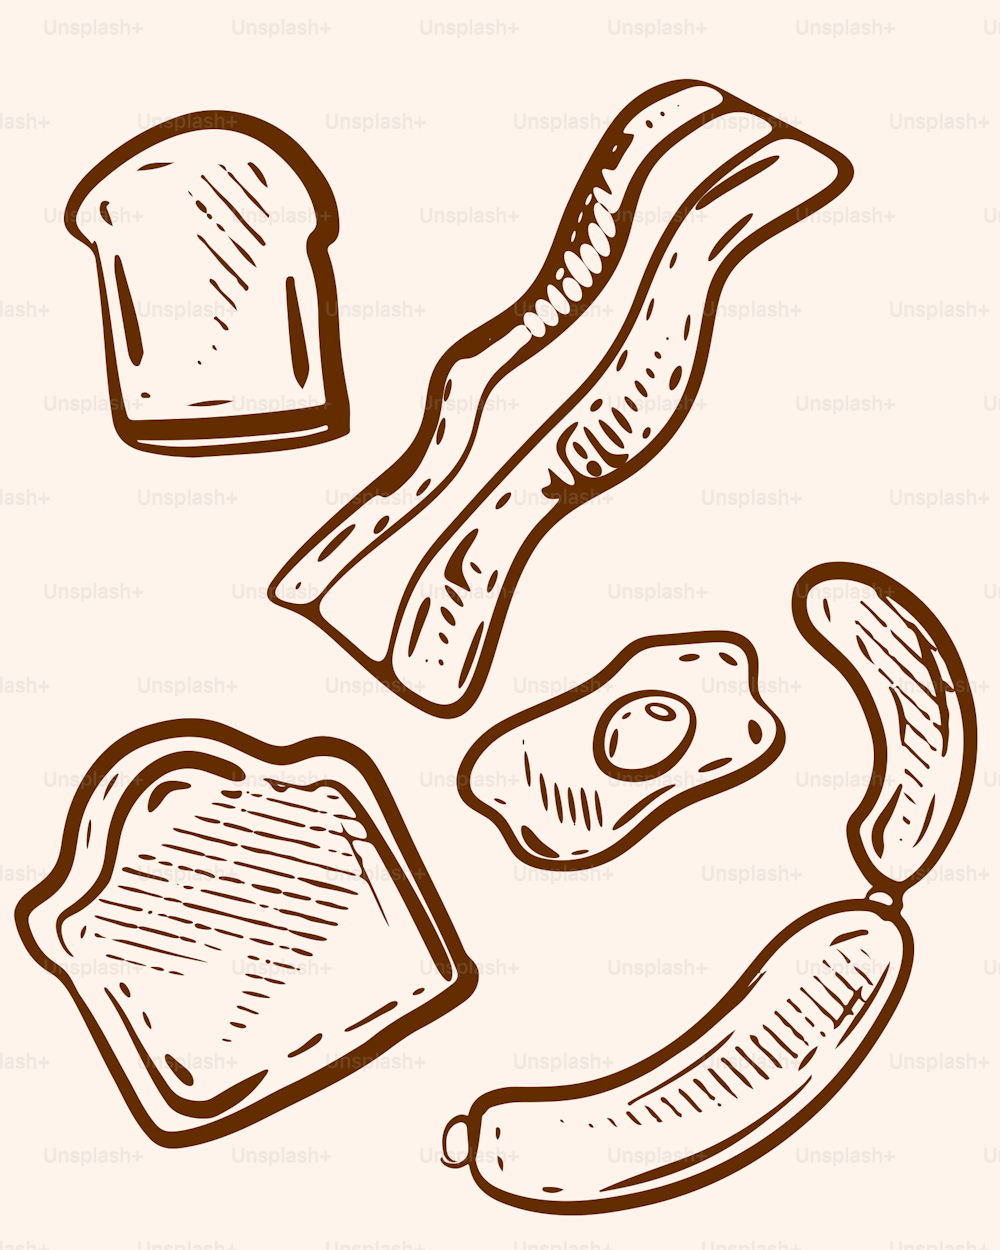 Un dibujo de una tostada, tocino y pan